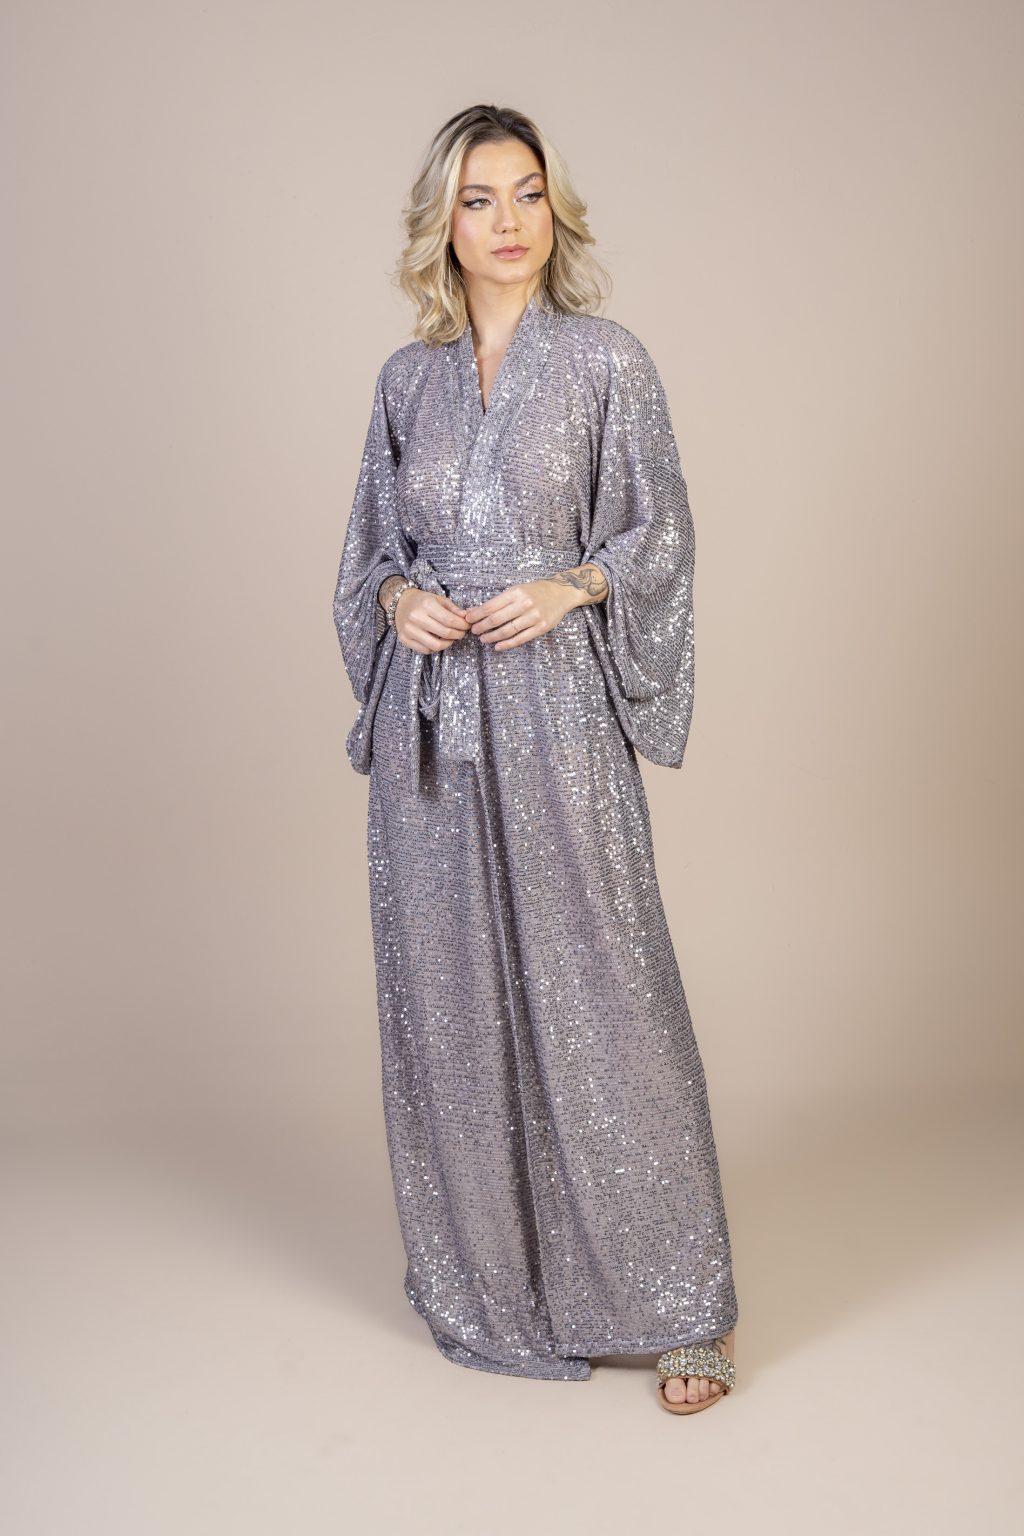 Mulher loira usando um kimono longo manga longa tecido de paetê prata brilhoso faixa de amarração na cintura festa conforto elegância praticidade joker maria sanz kimono quimono